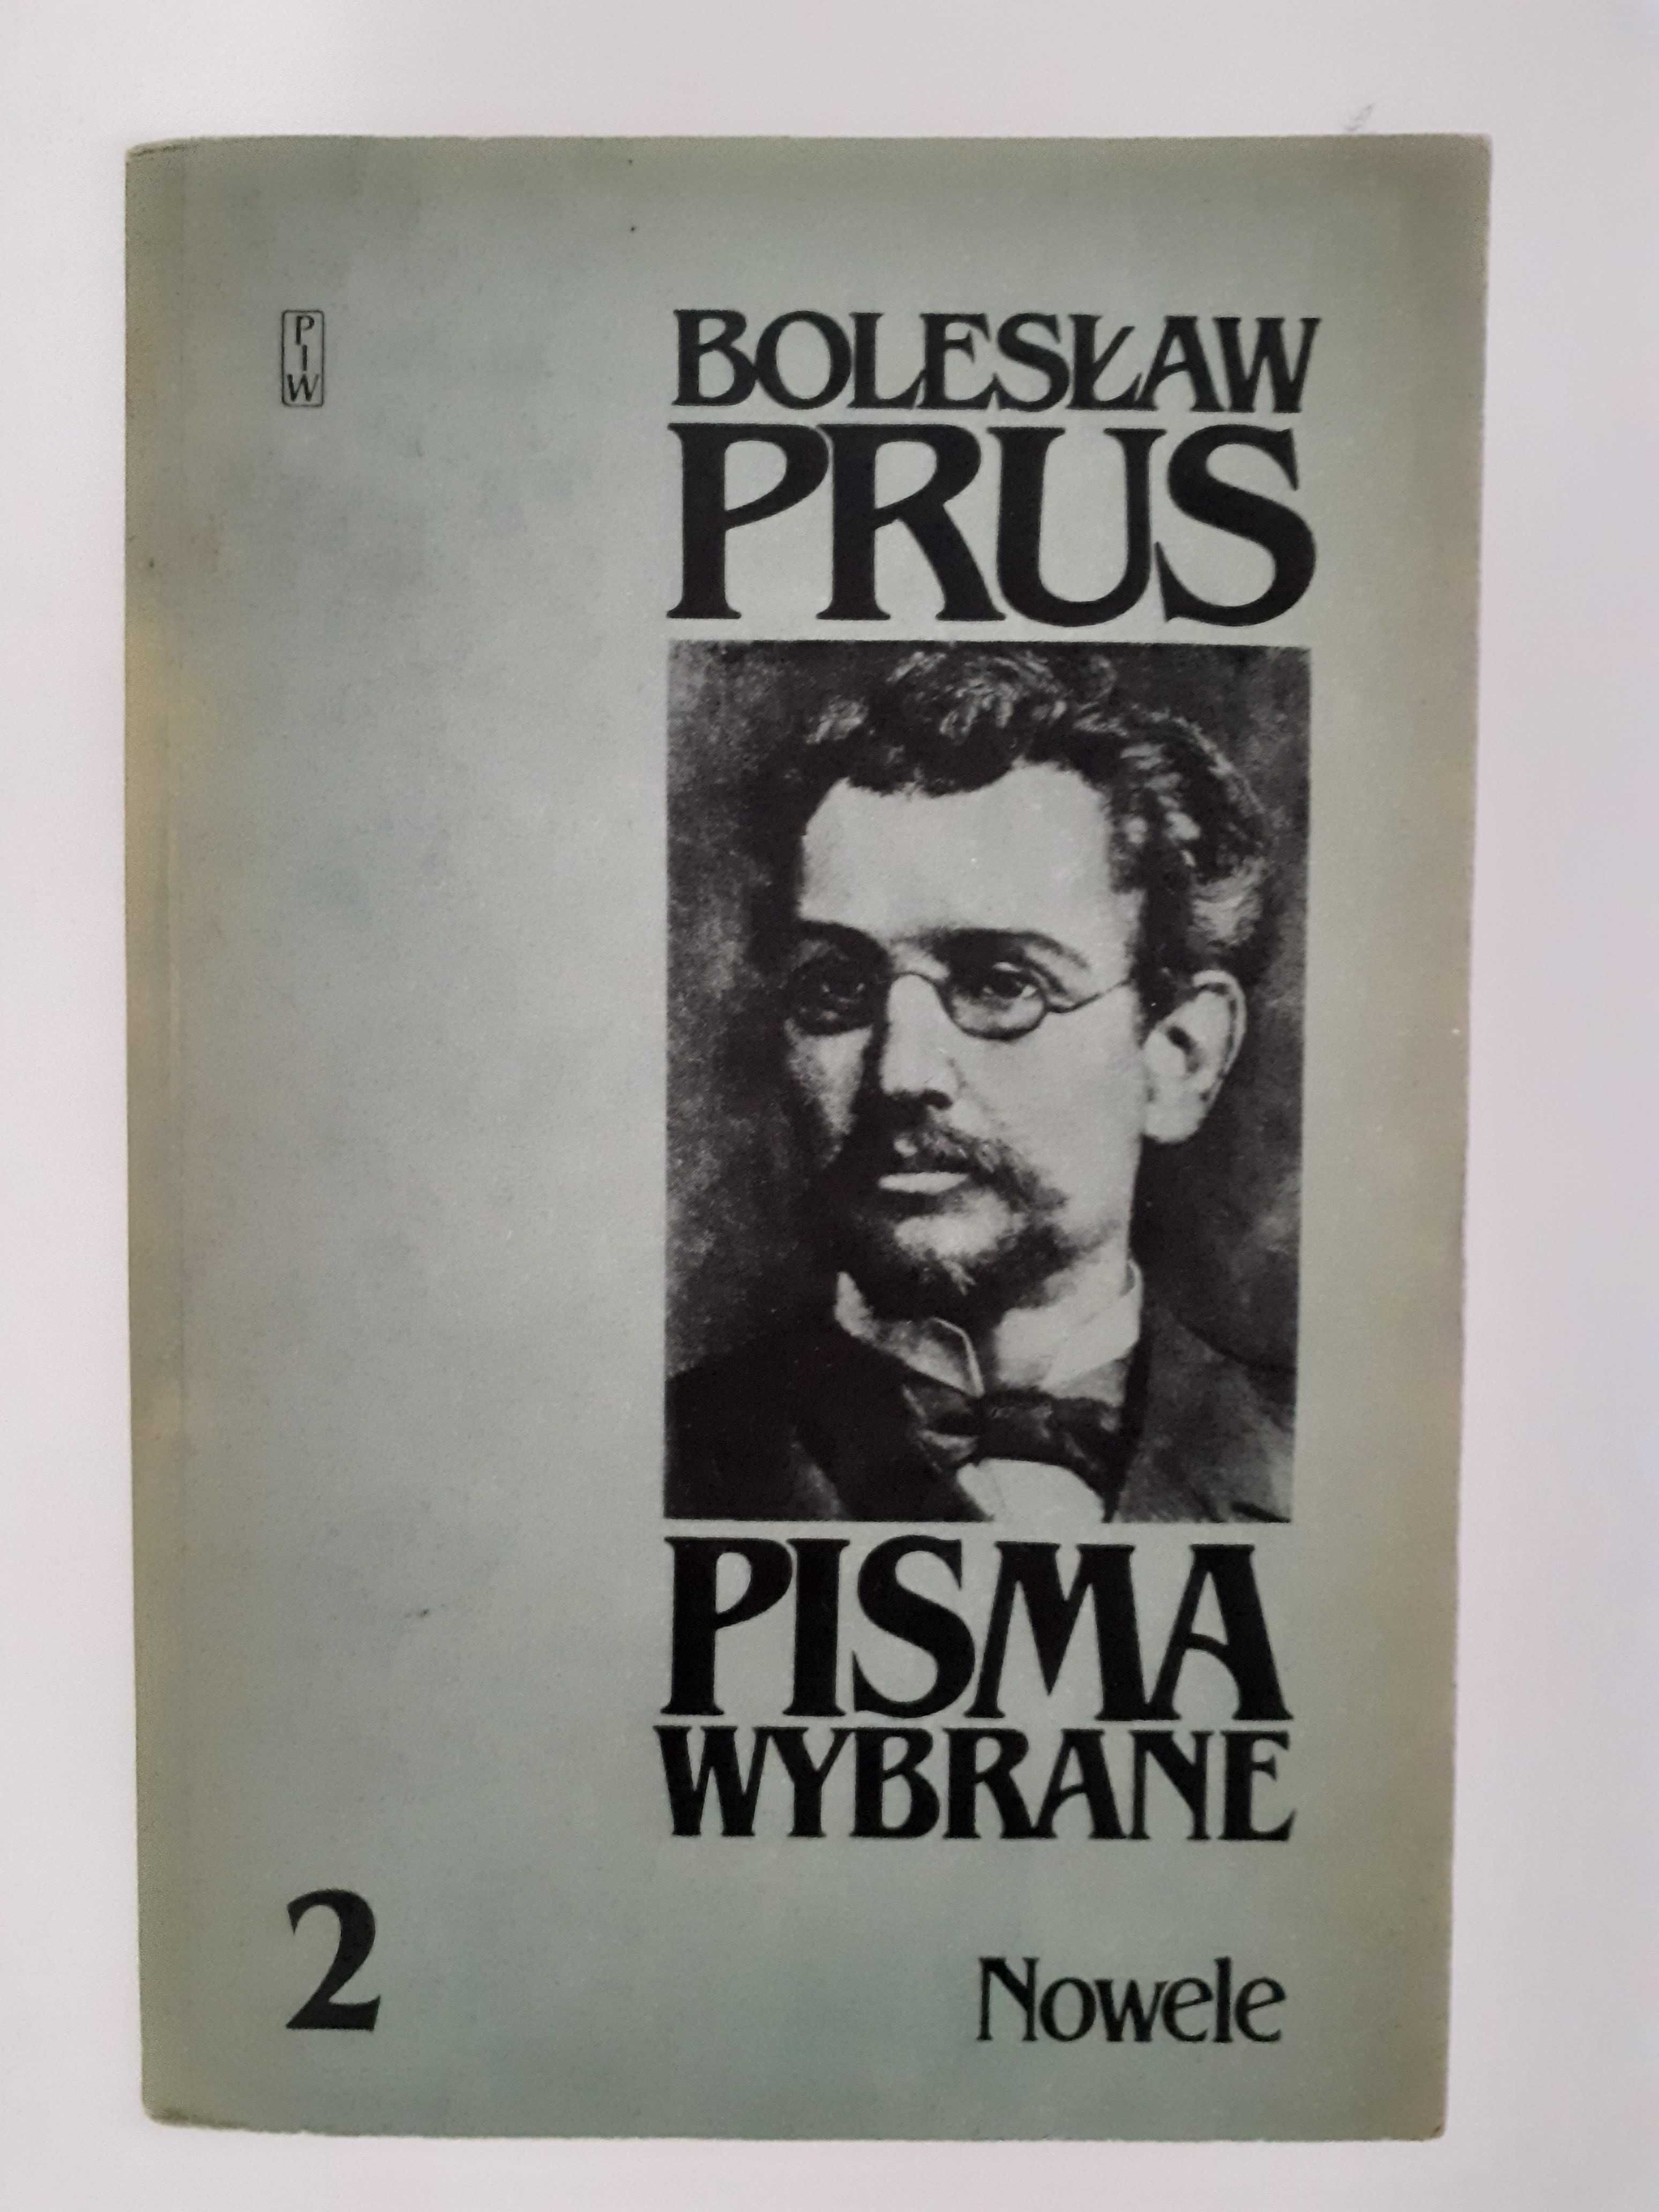 Bolesław Prus "Pisma wybrane" - 2 tomy nowel, Placówka, Anielka